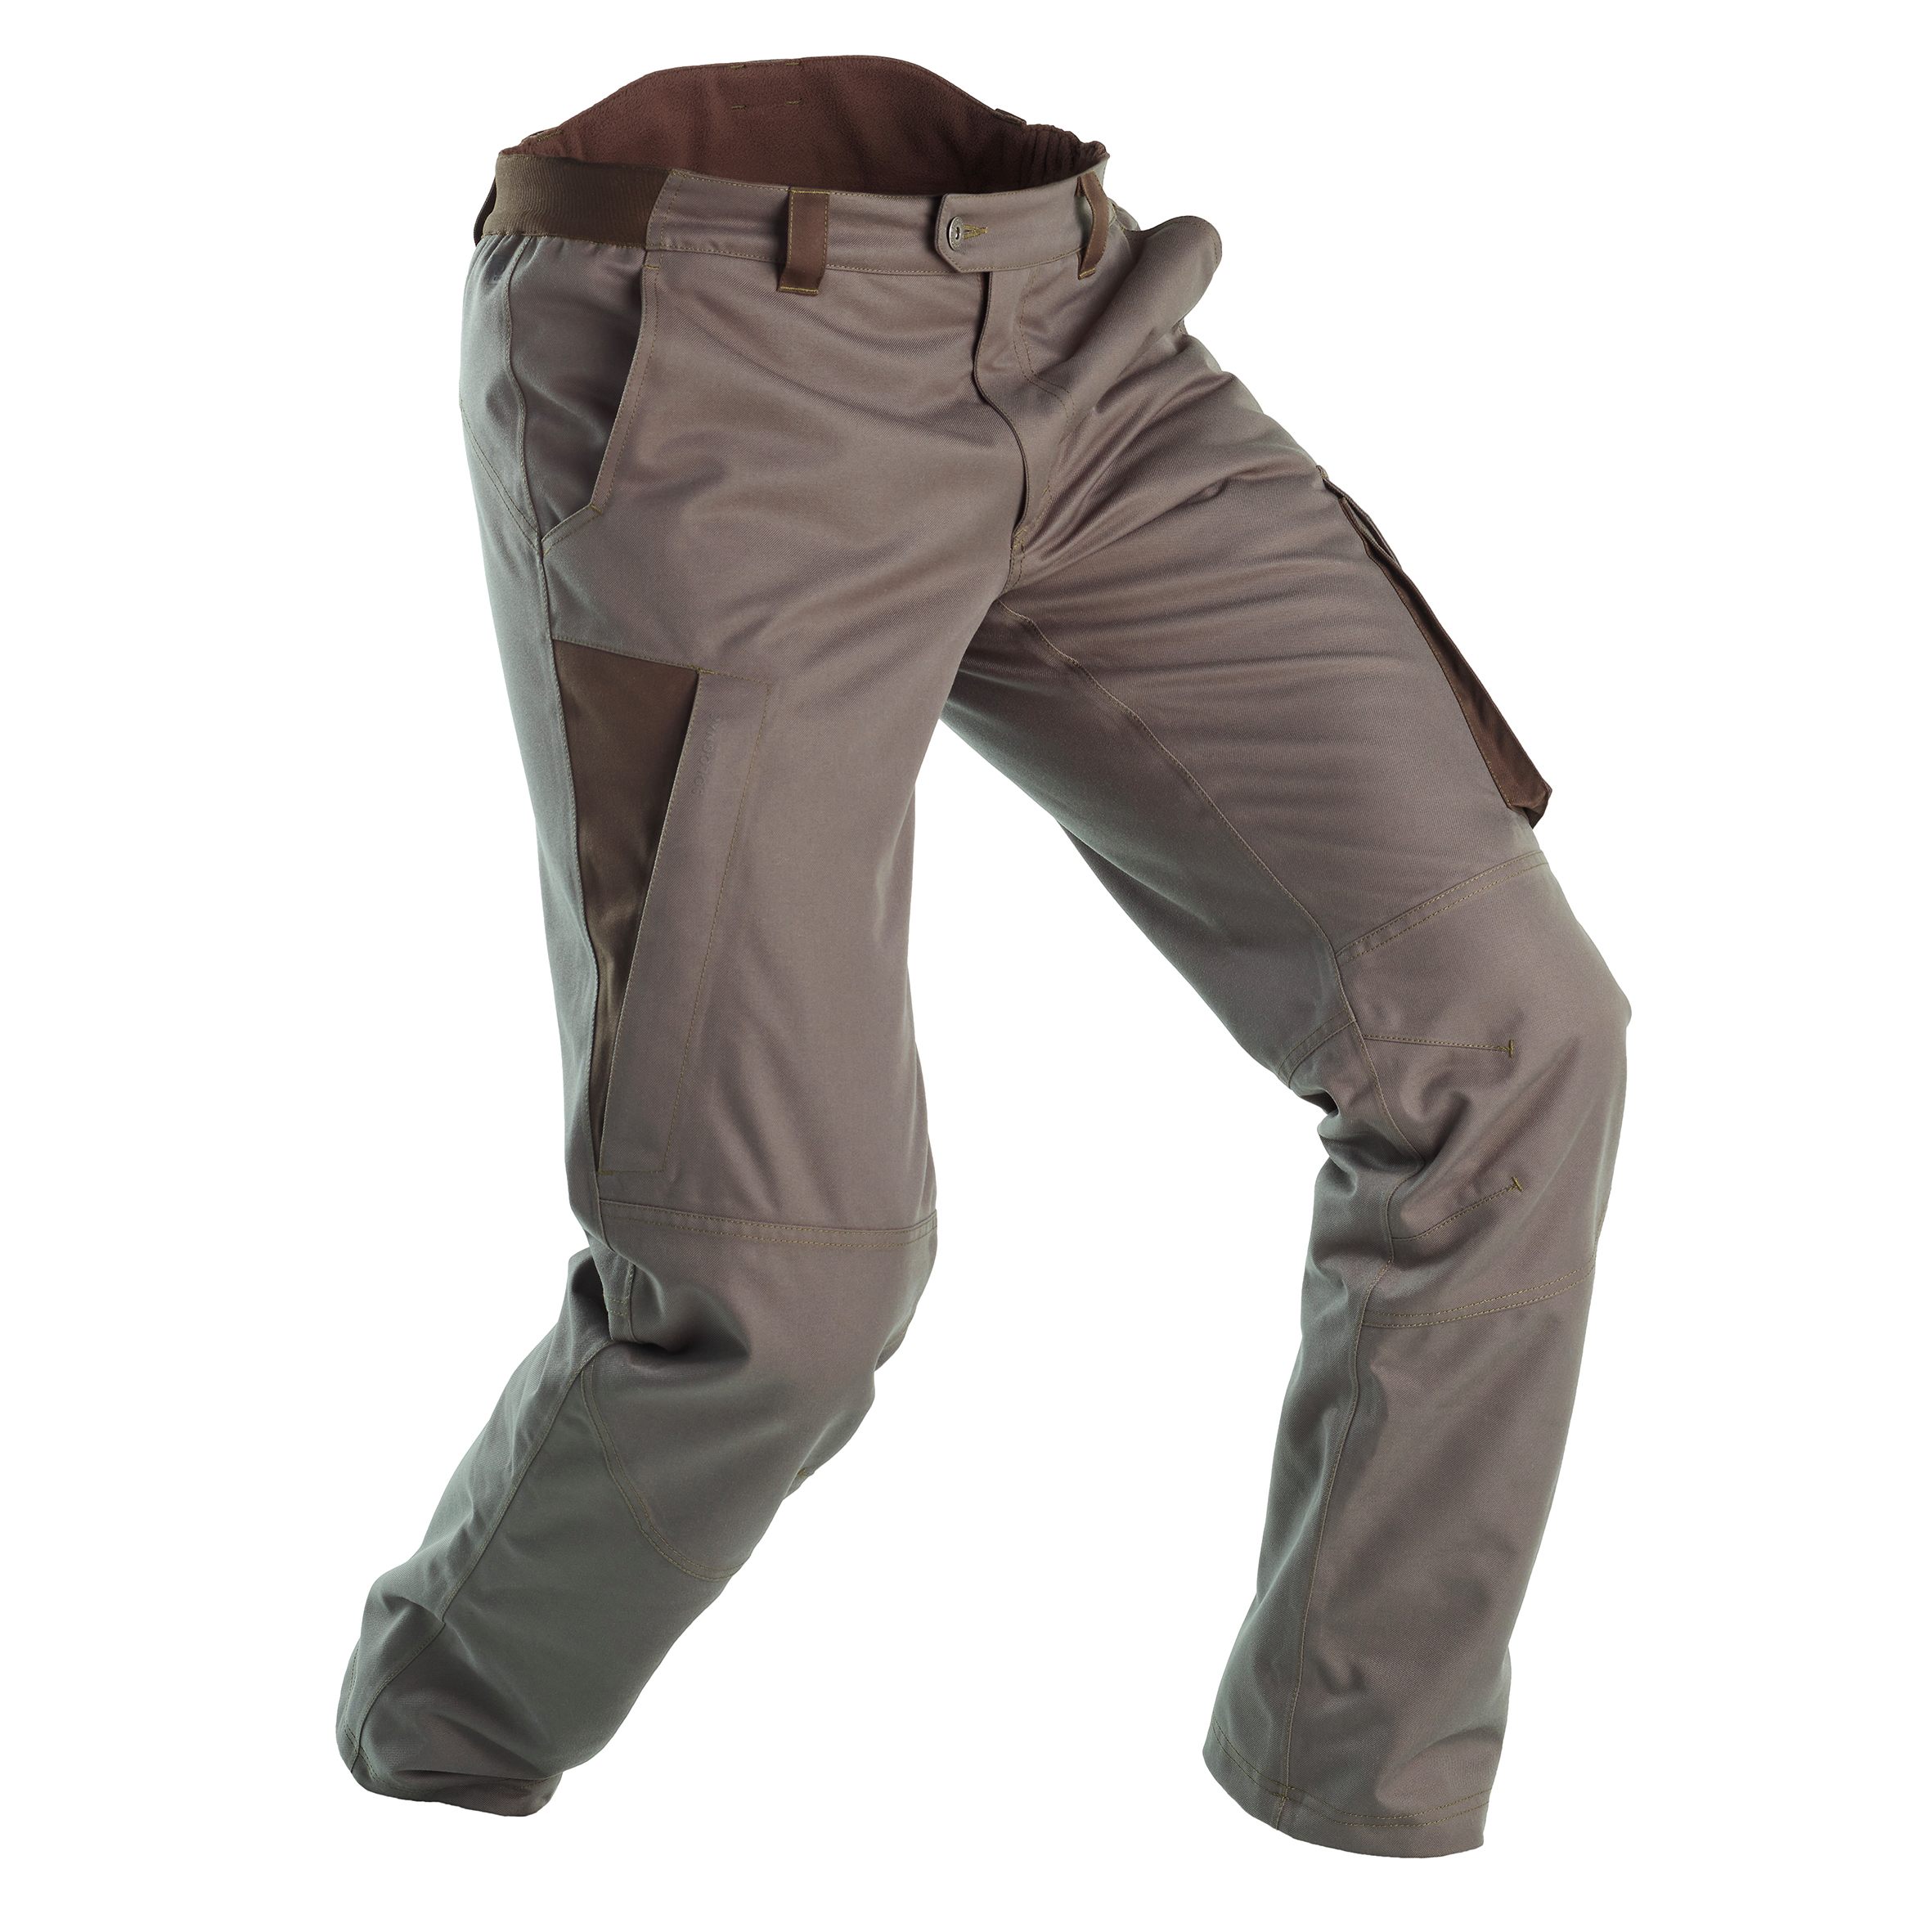 Pantalon de pêche imperméable 500 gris pour les clubs et collectivités